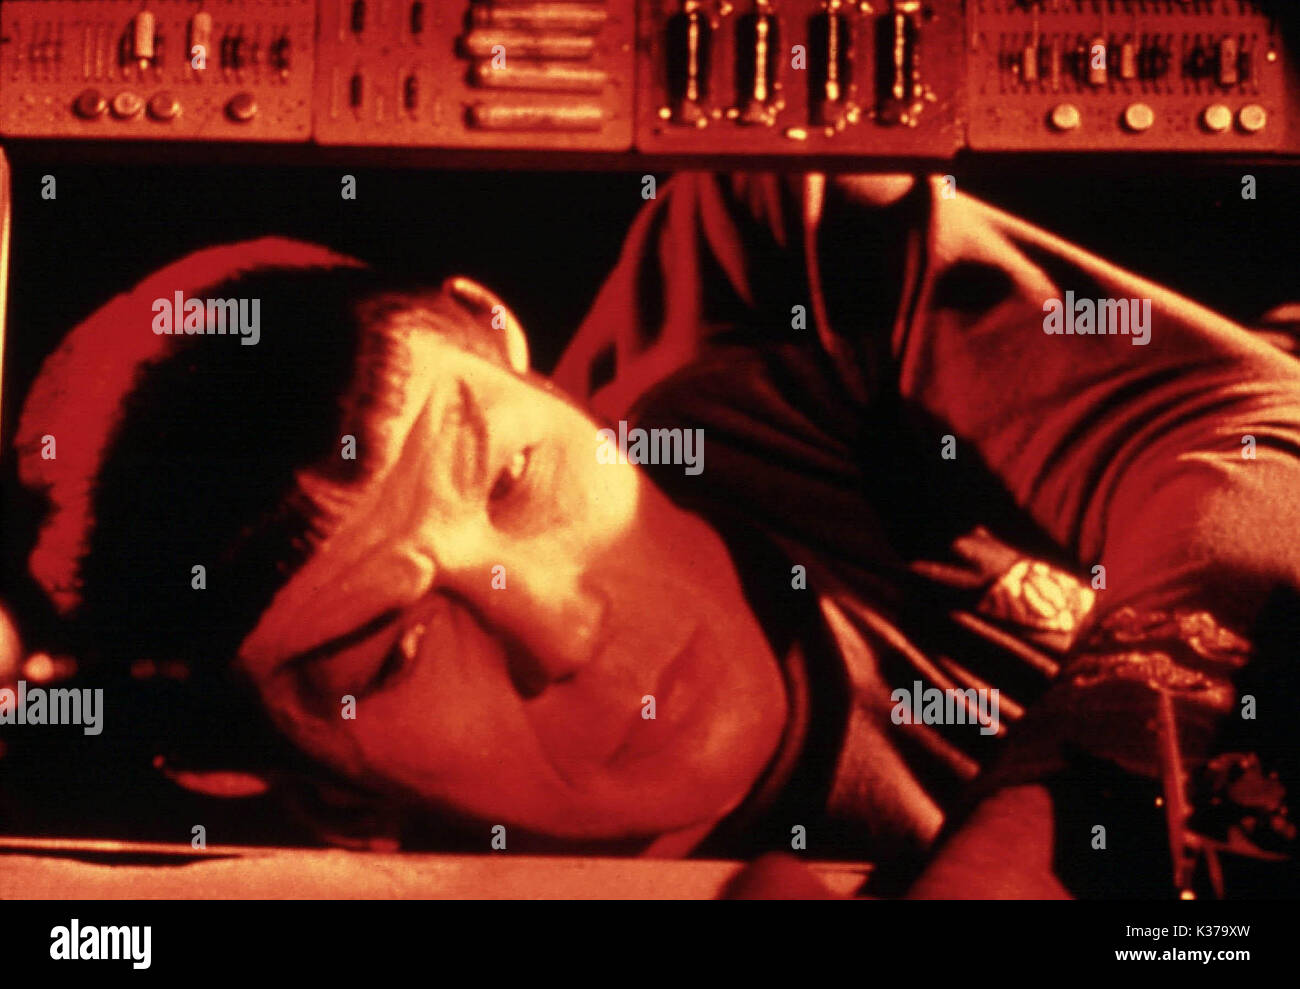 STAR TREK LEONARD NIMOY as Mr Spock STAR TREK Stock Photo